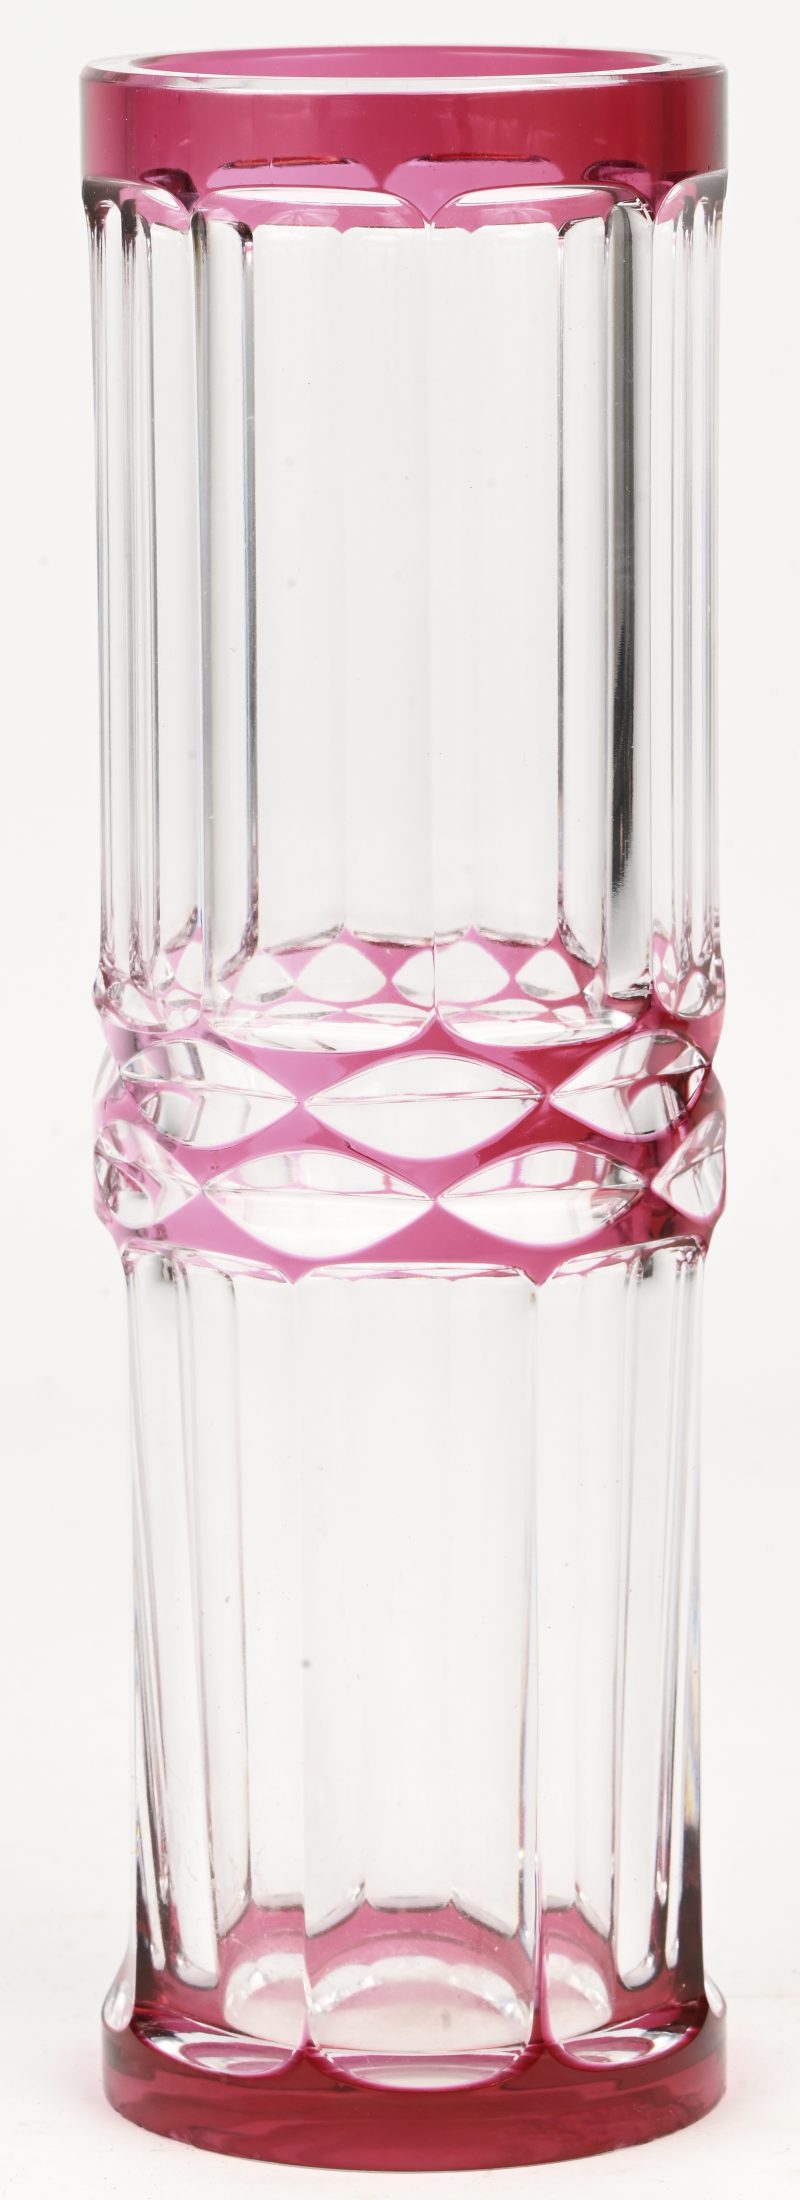 Een slanke kristallen vaas, roze in de massa gekleurd, gemerkt Val St Lambert.